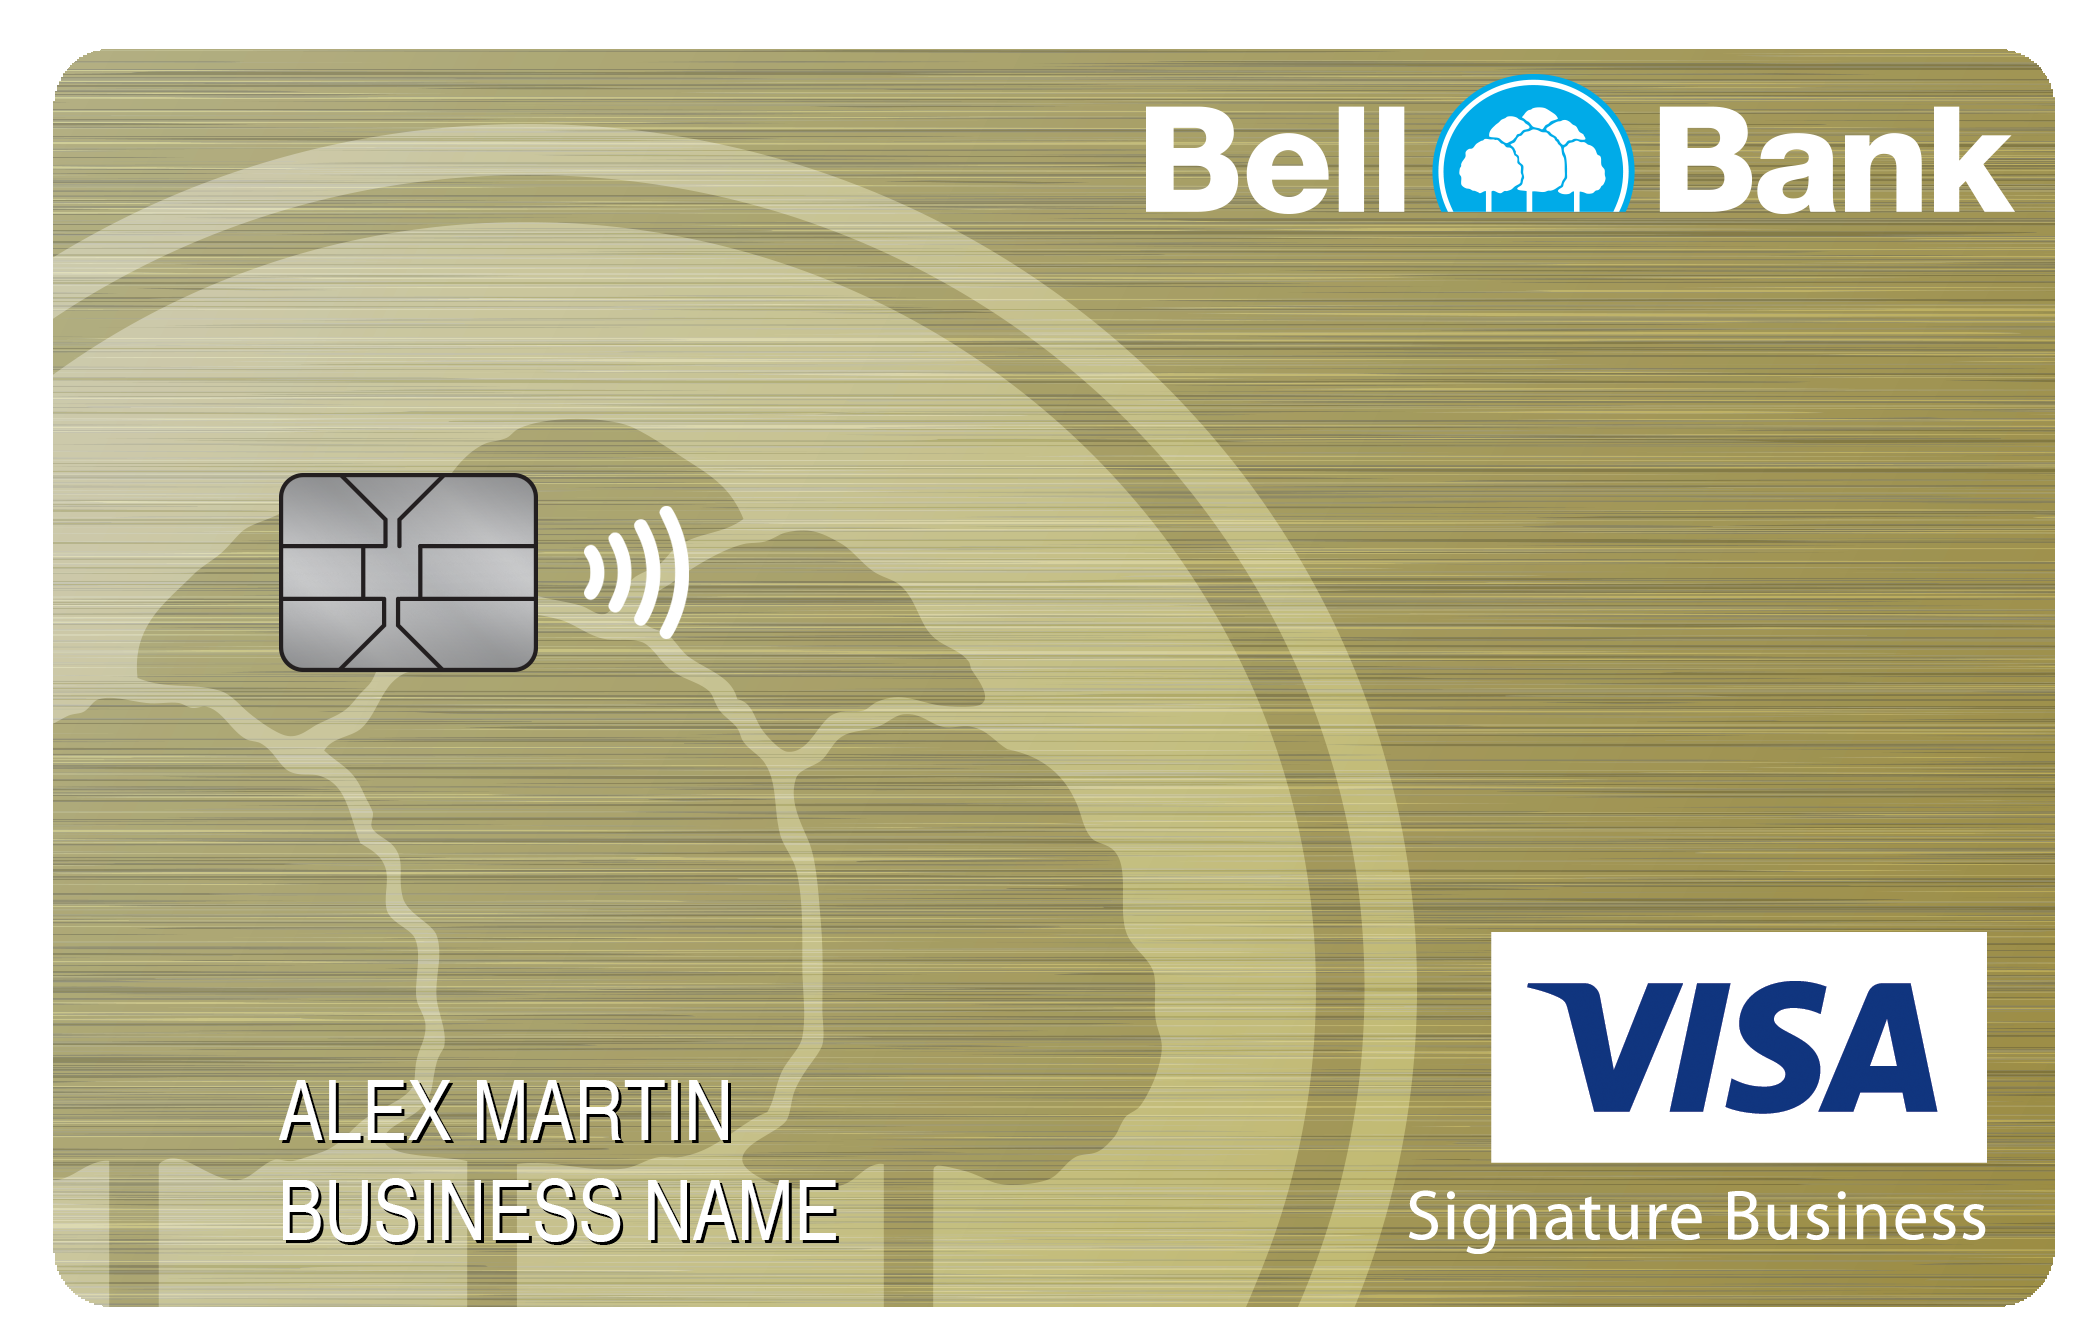 Bell Bank Smart Business Rewards Card